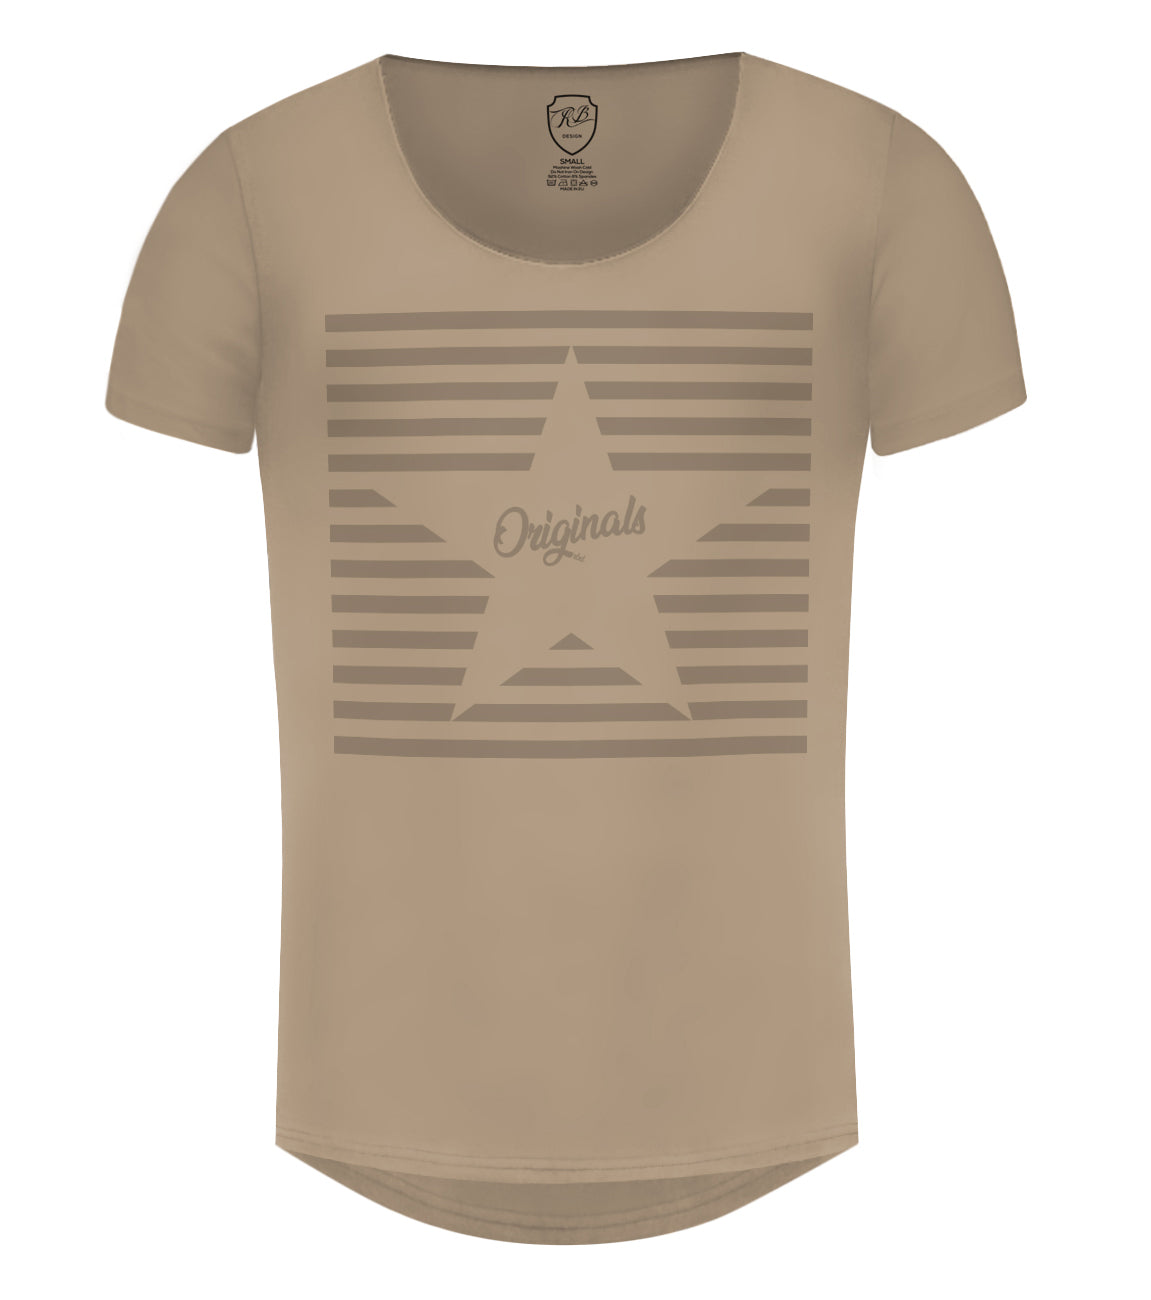 Men's T-shirt "Originals" MD956